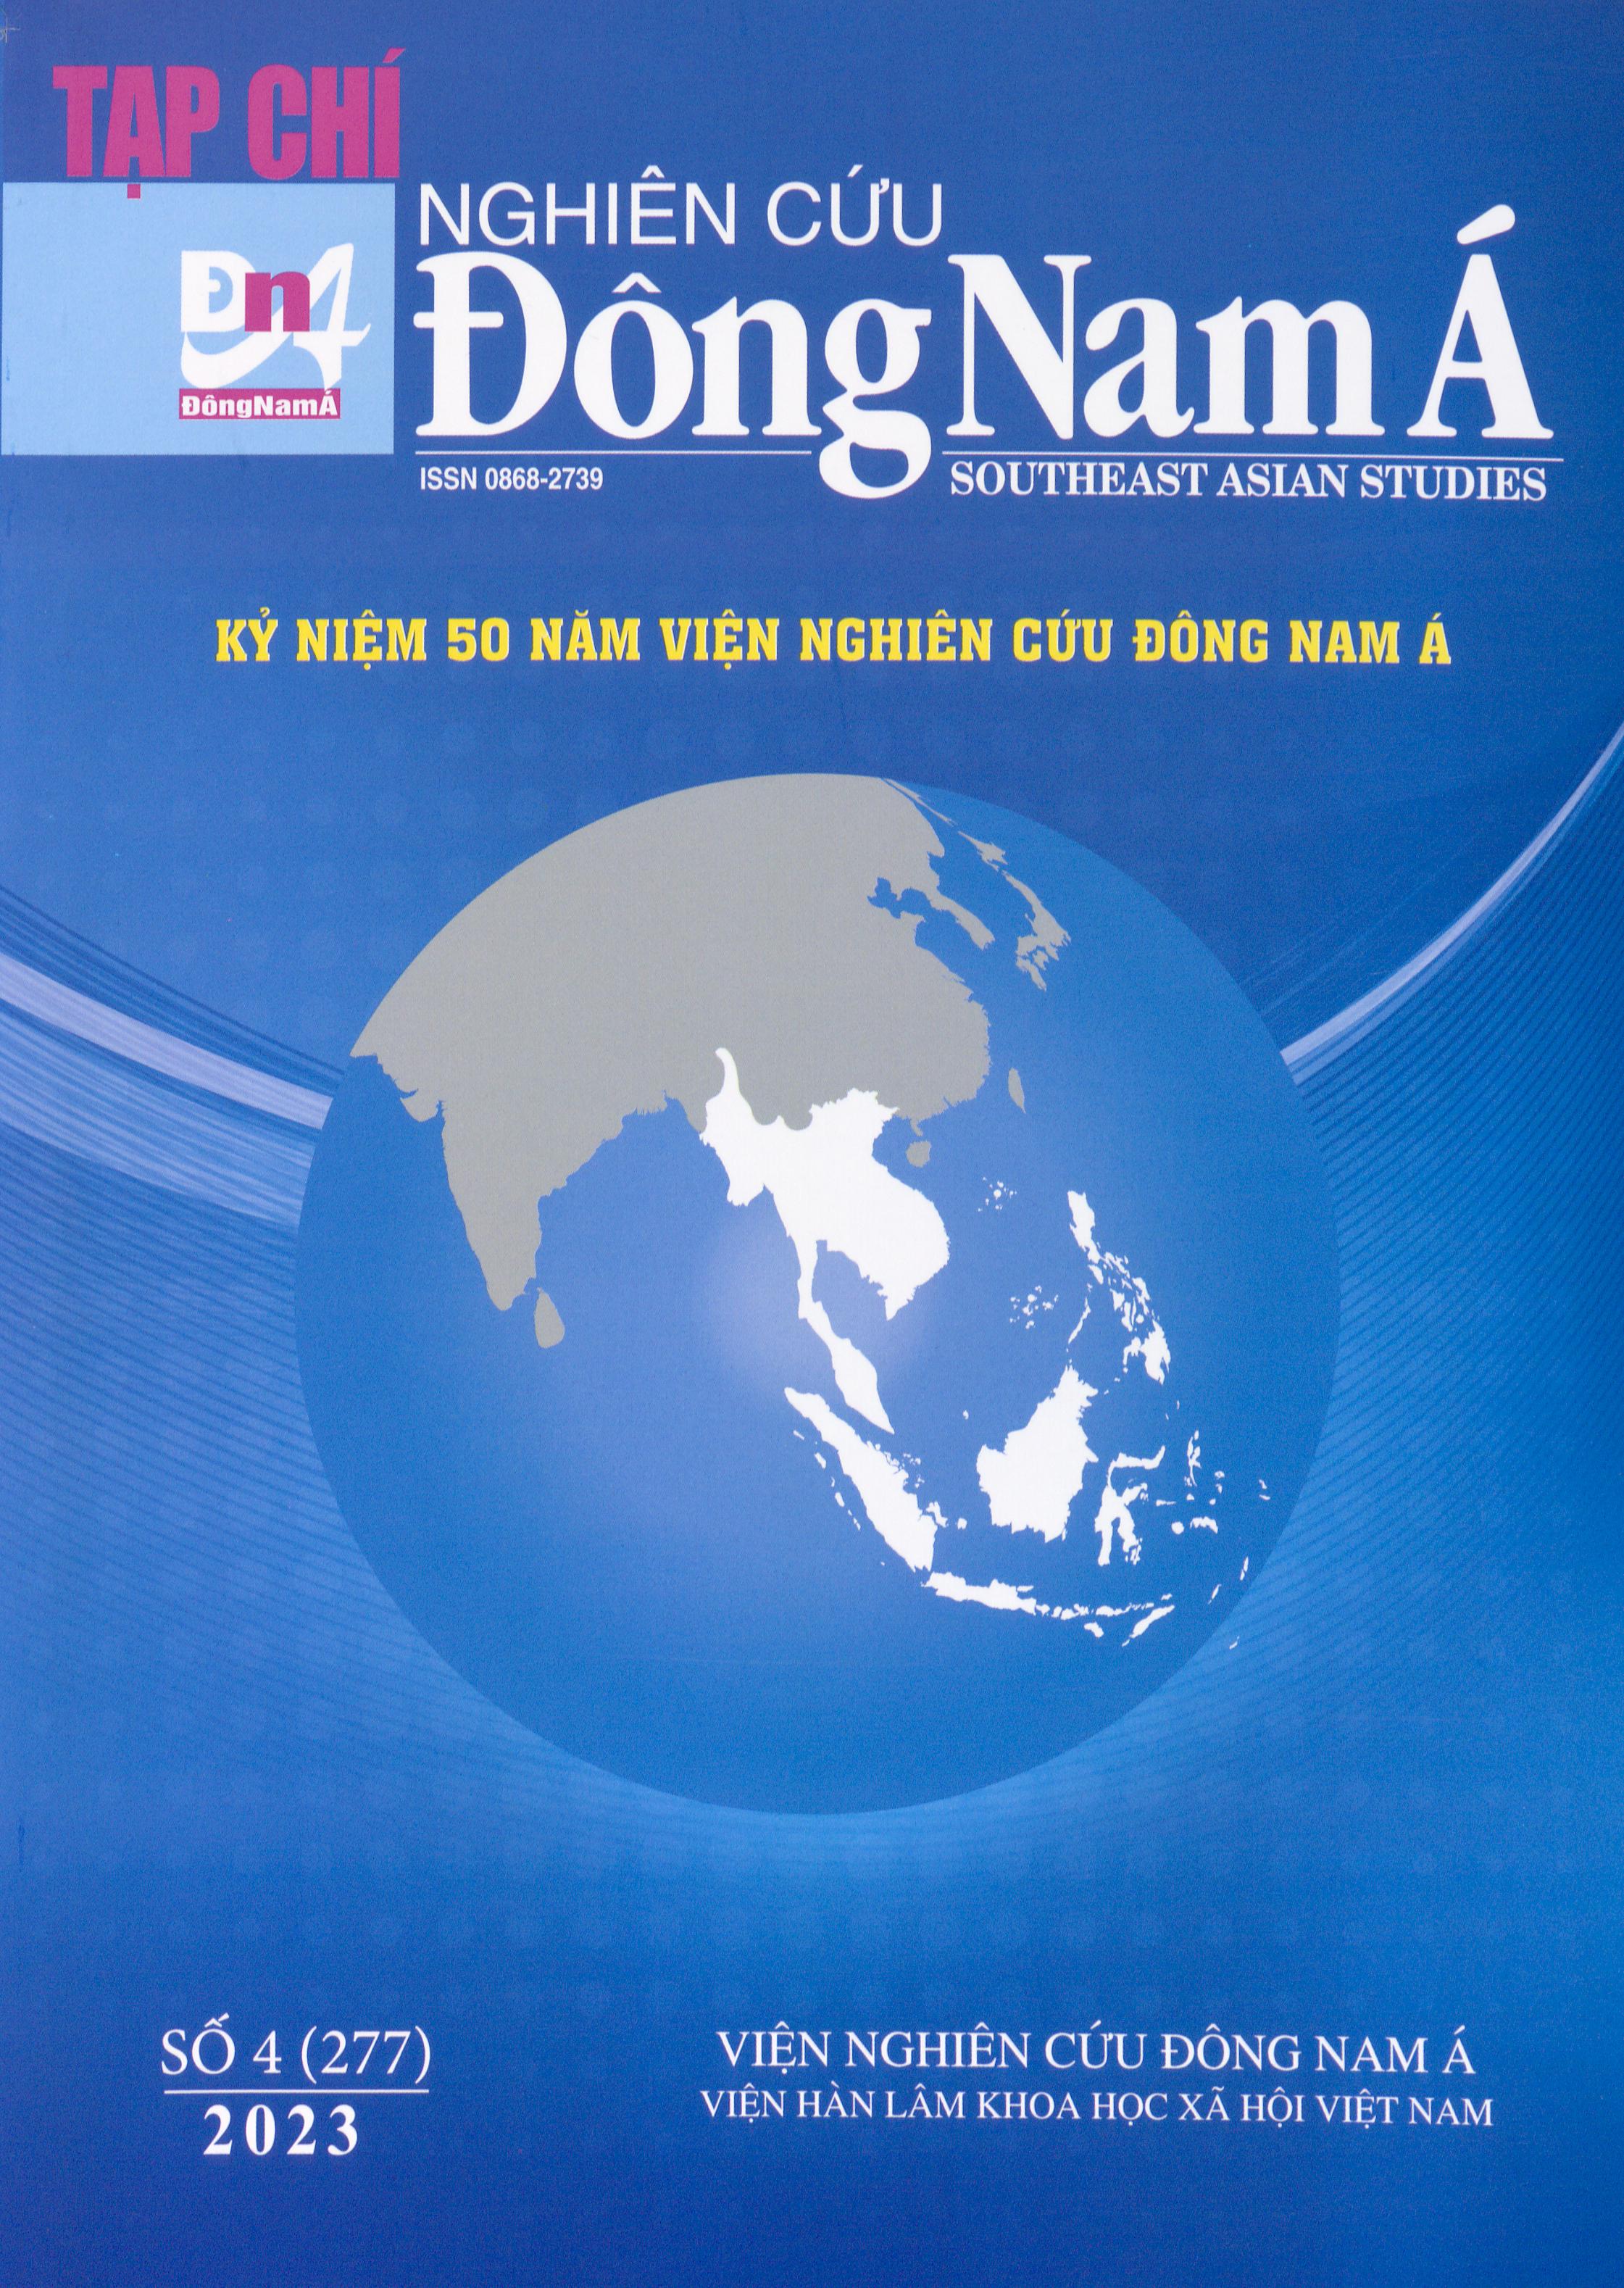 Tạp chí Nghiên cứu Đông Nam Á, số 4 năm 2023